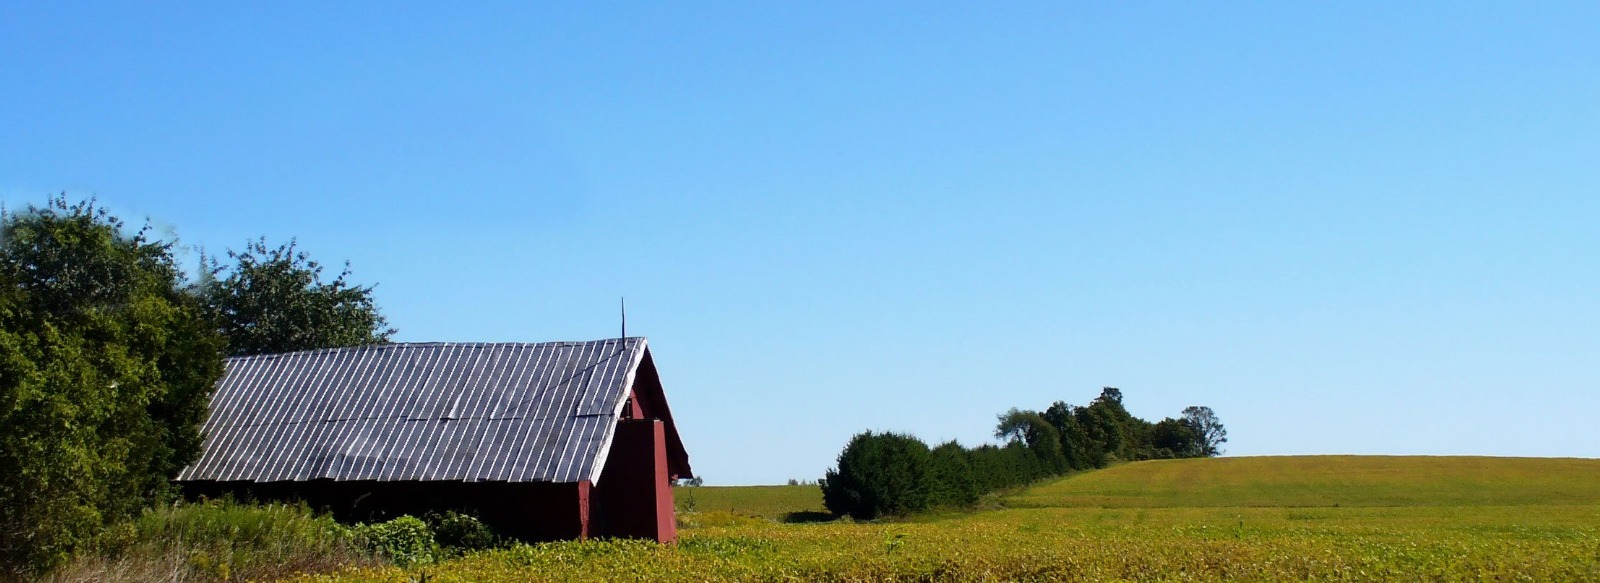 barn in a field